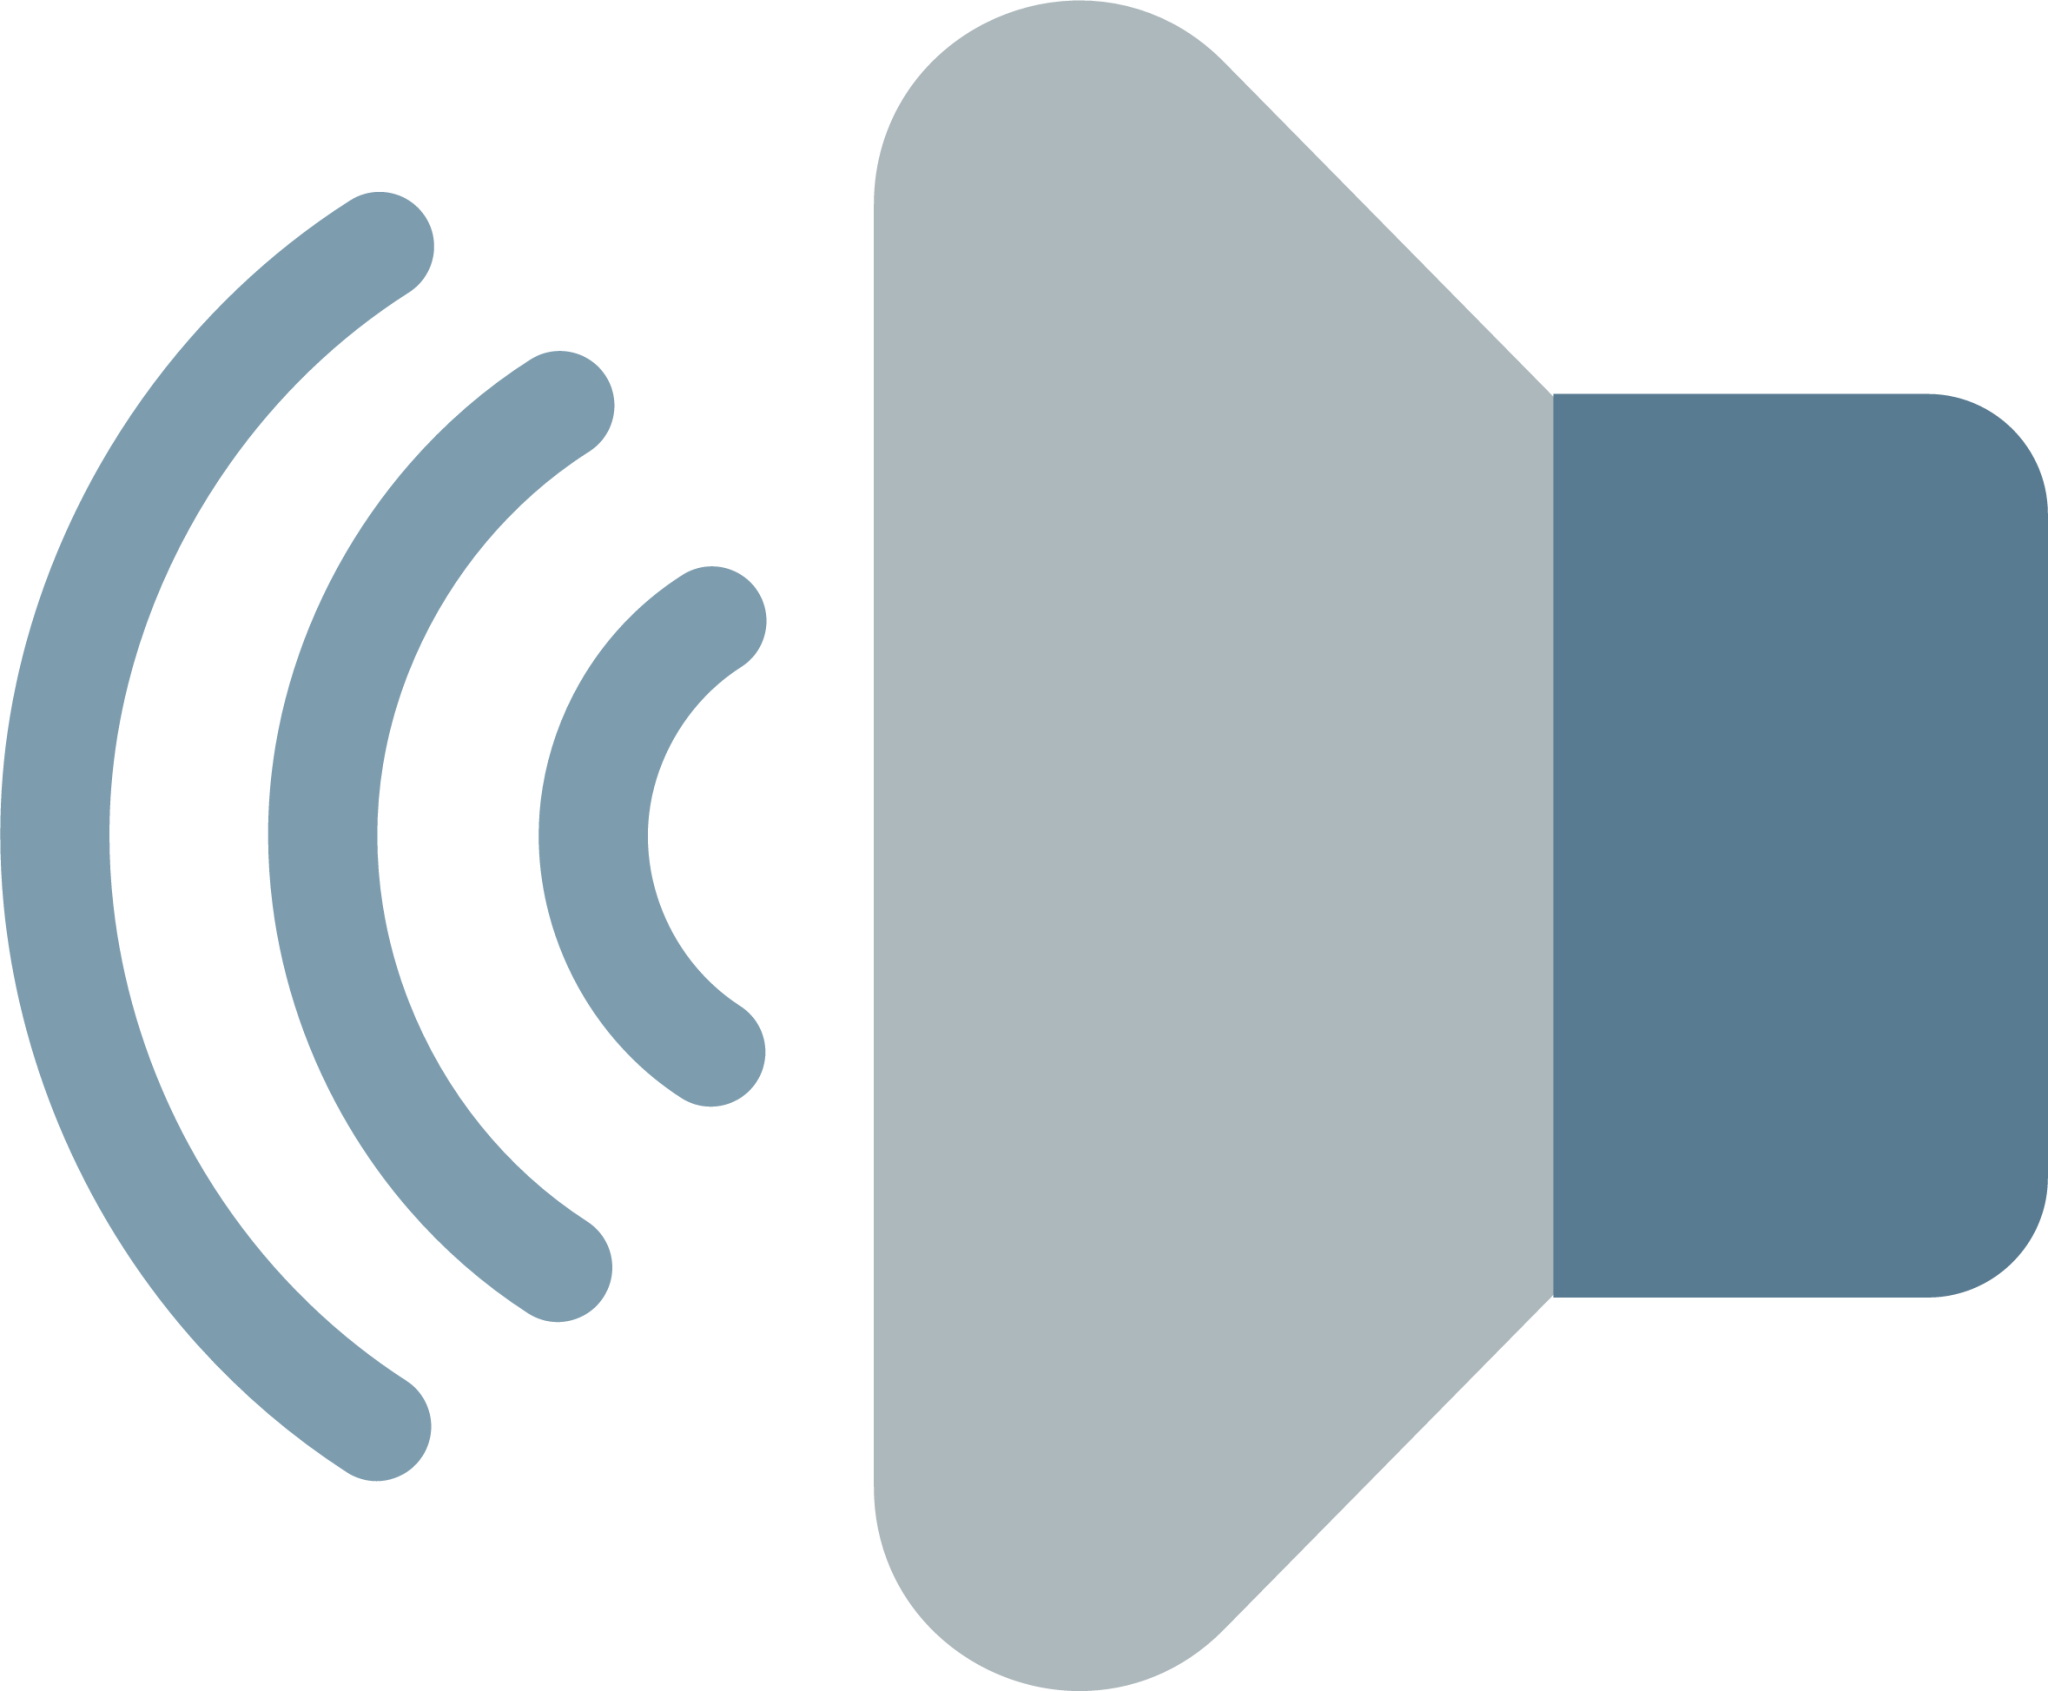 right speaker with three sound waves emoji